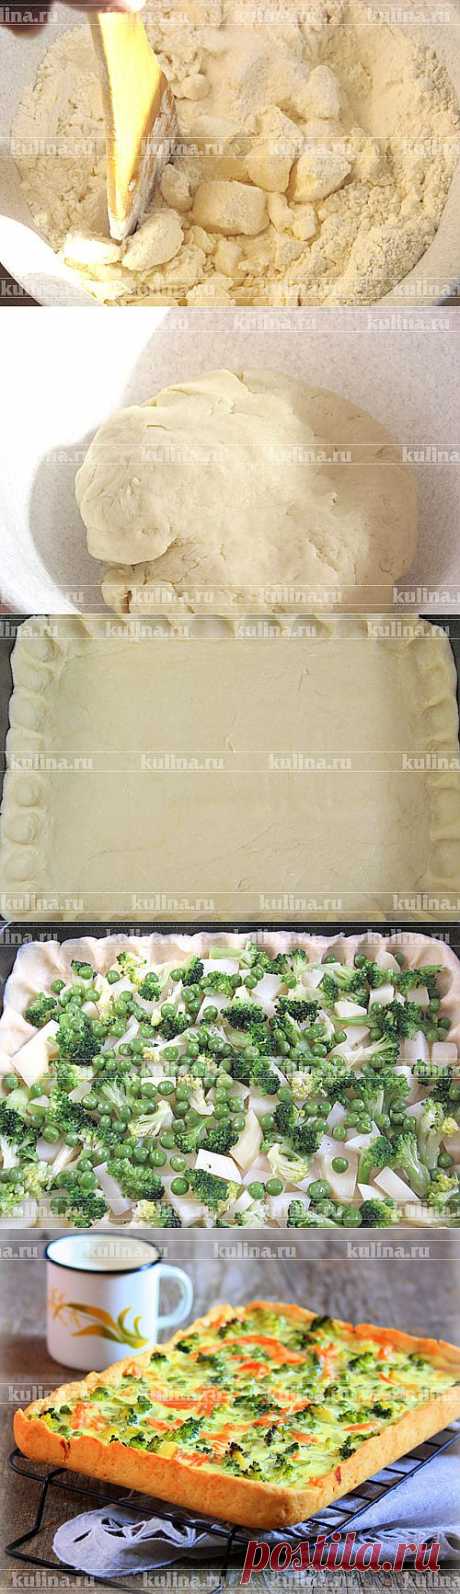 Пирог с форелью и брокколи – рецепт приготовления с фото от Kulina.Ru